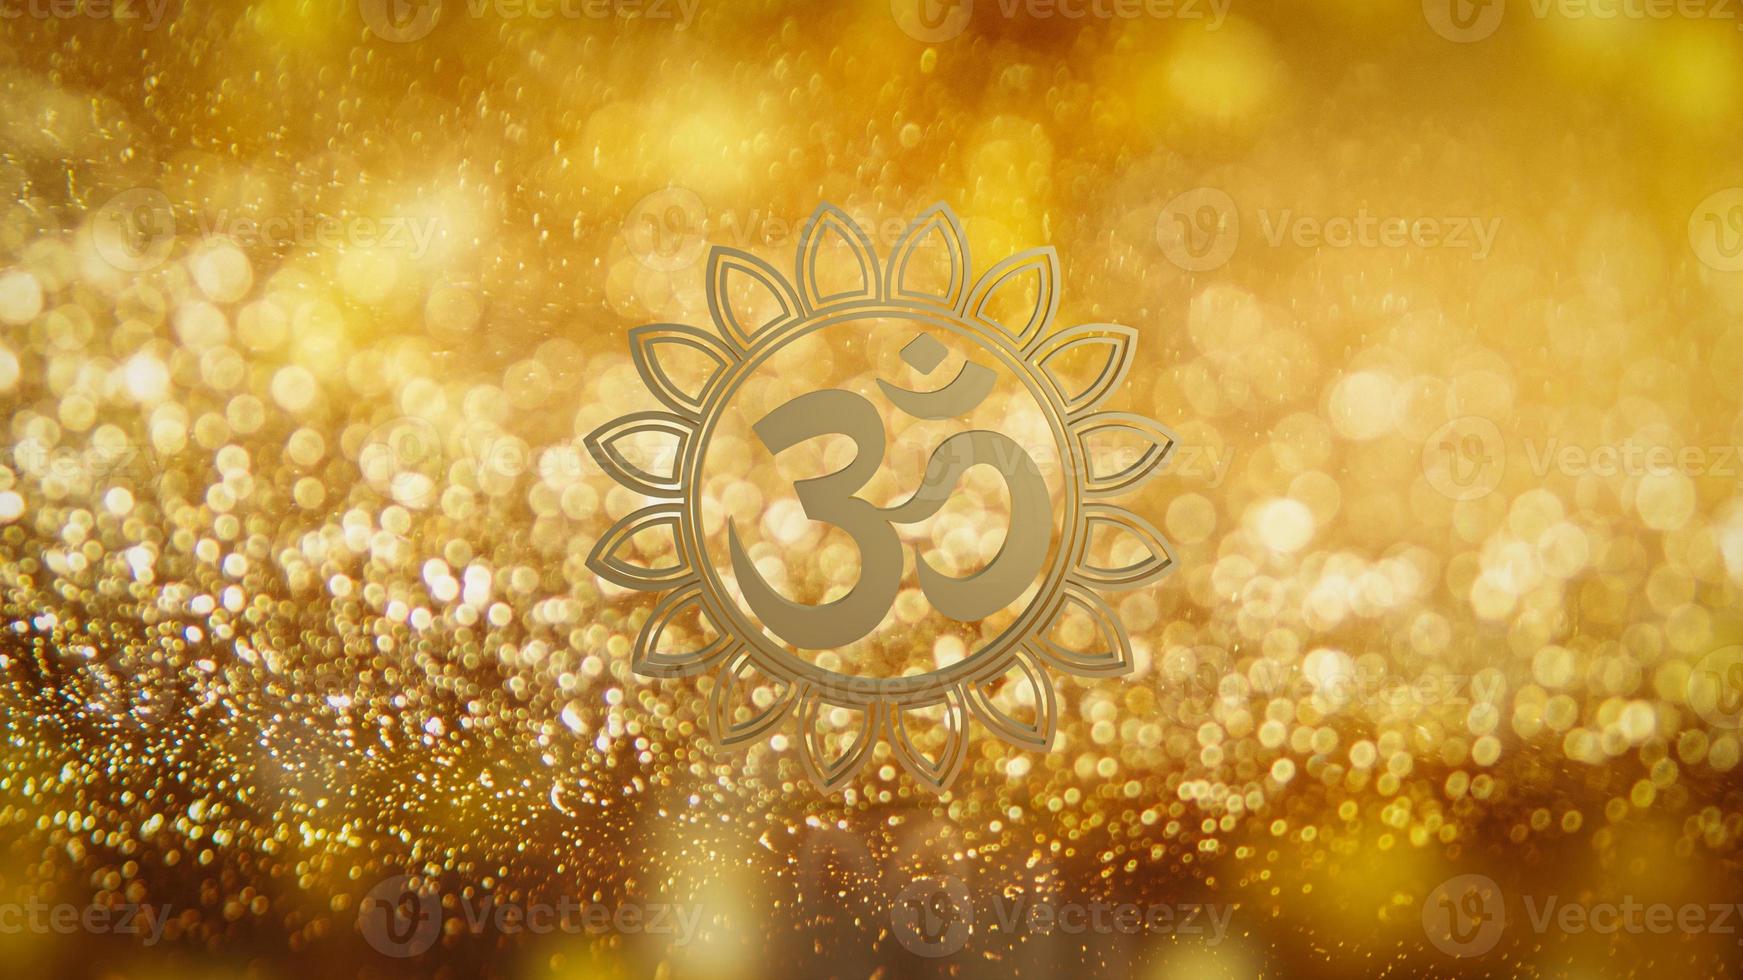 Das hinduistische Gold-Ohm-Symbol auf Luxus gebrochen für das 3D-Rendering des Hintergrundkonzepts foto